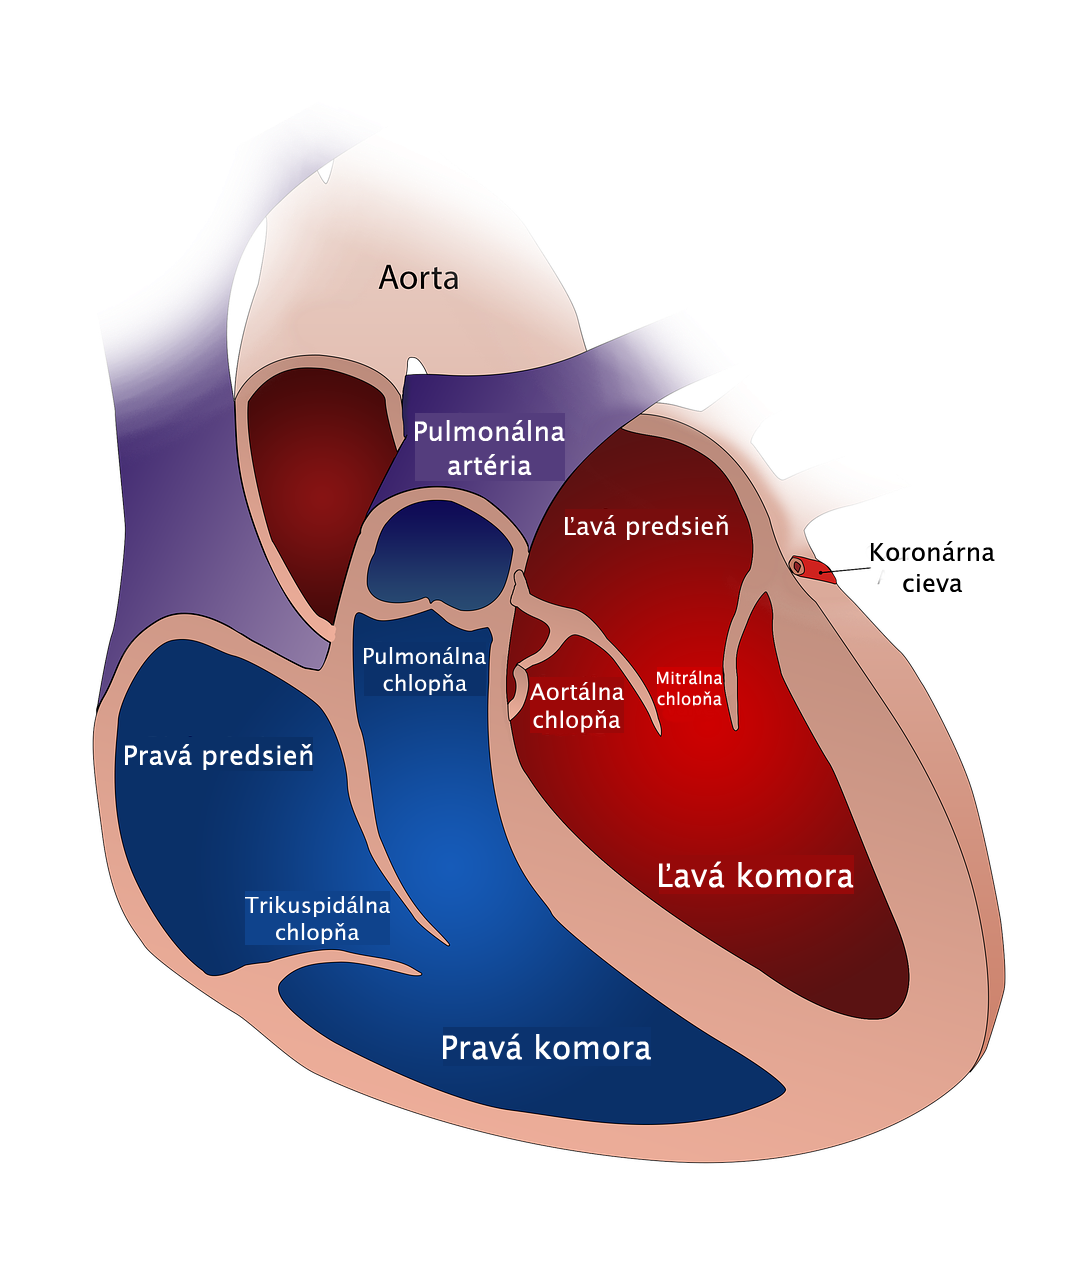 Model srdca s rozdelením na pravú a ľavú stranu, pravá predsieň a pravá komora, ľavá predsieň a ľavá komora, chlopne, cievy, artéria pulmonalis, aorta